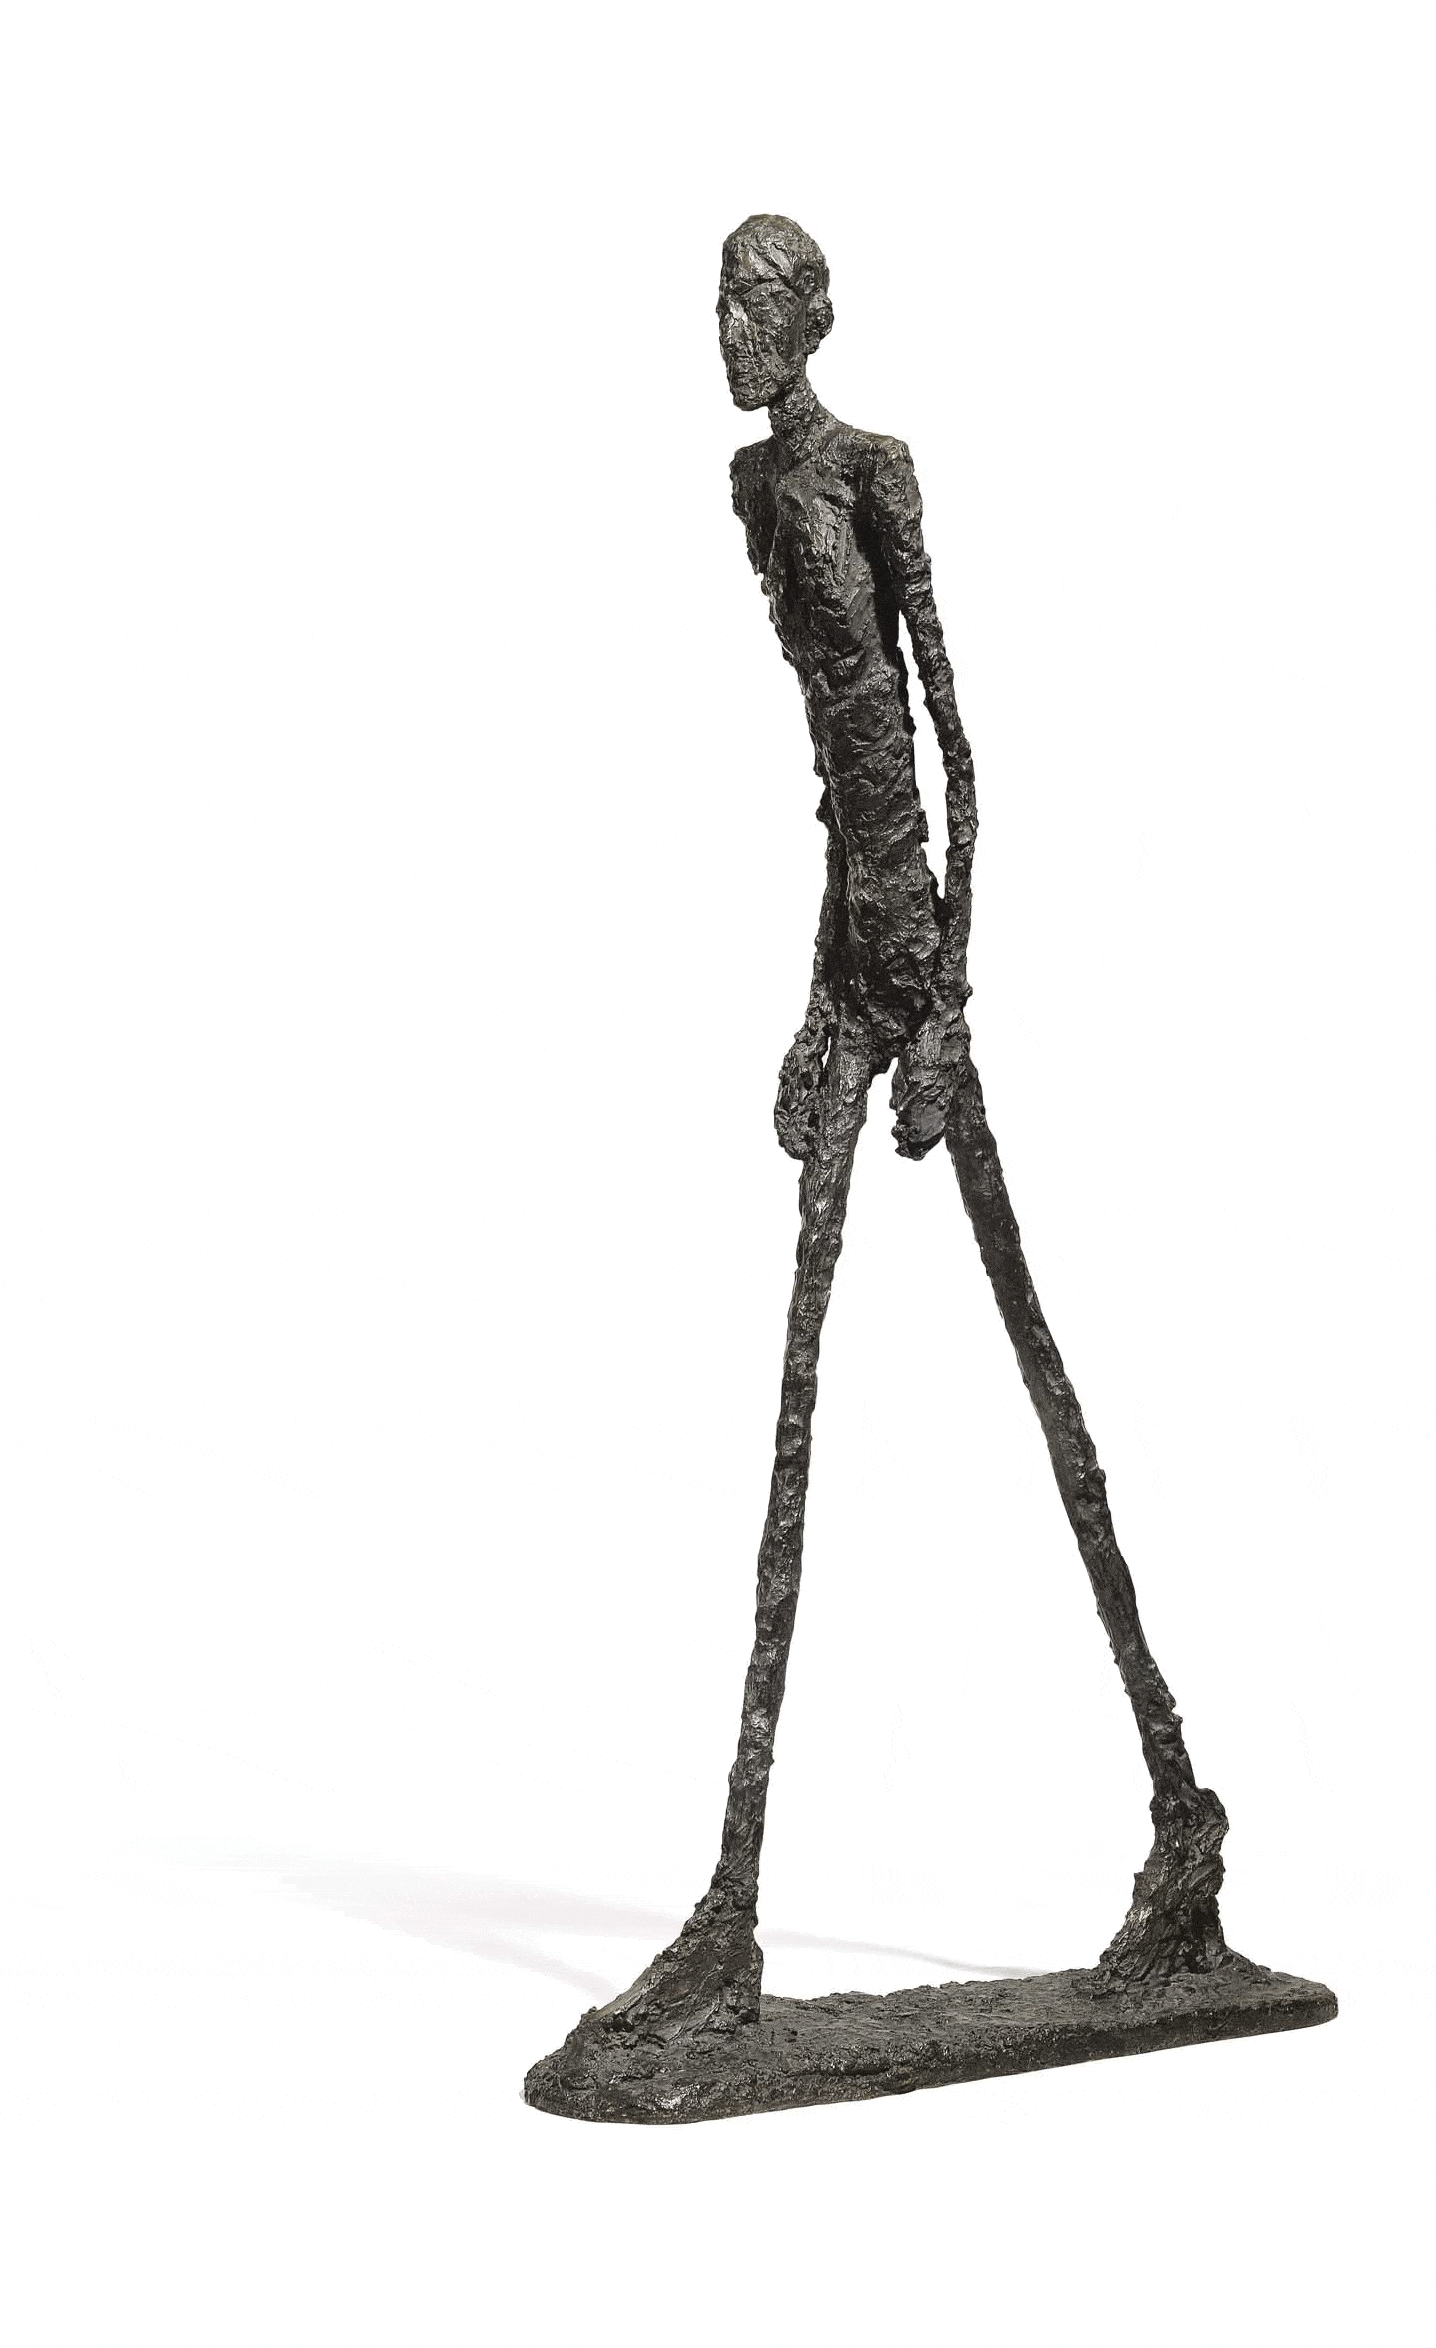 onkruid Boren Er is behoefte aan Canon van de Moderne Kunst: Alberto Giacometti - KunstVensters